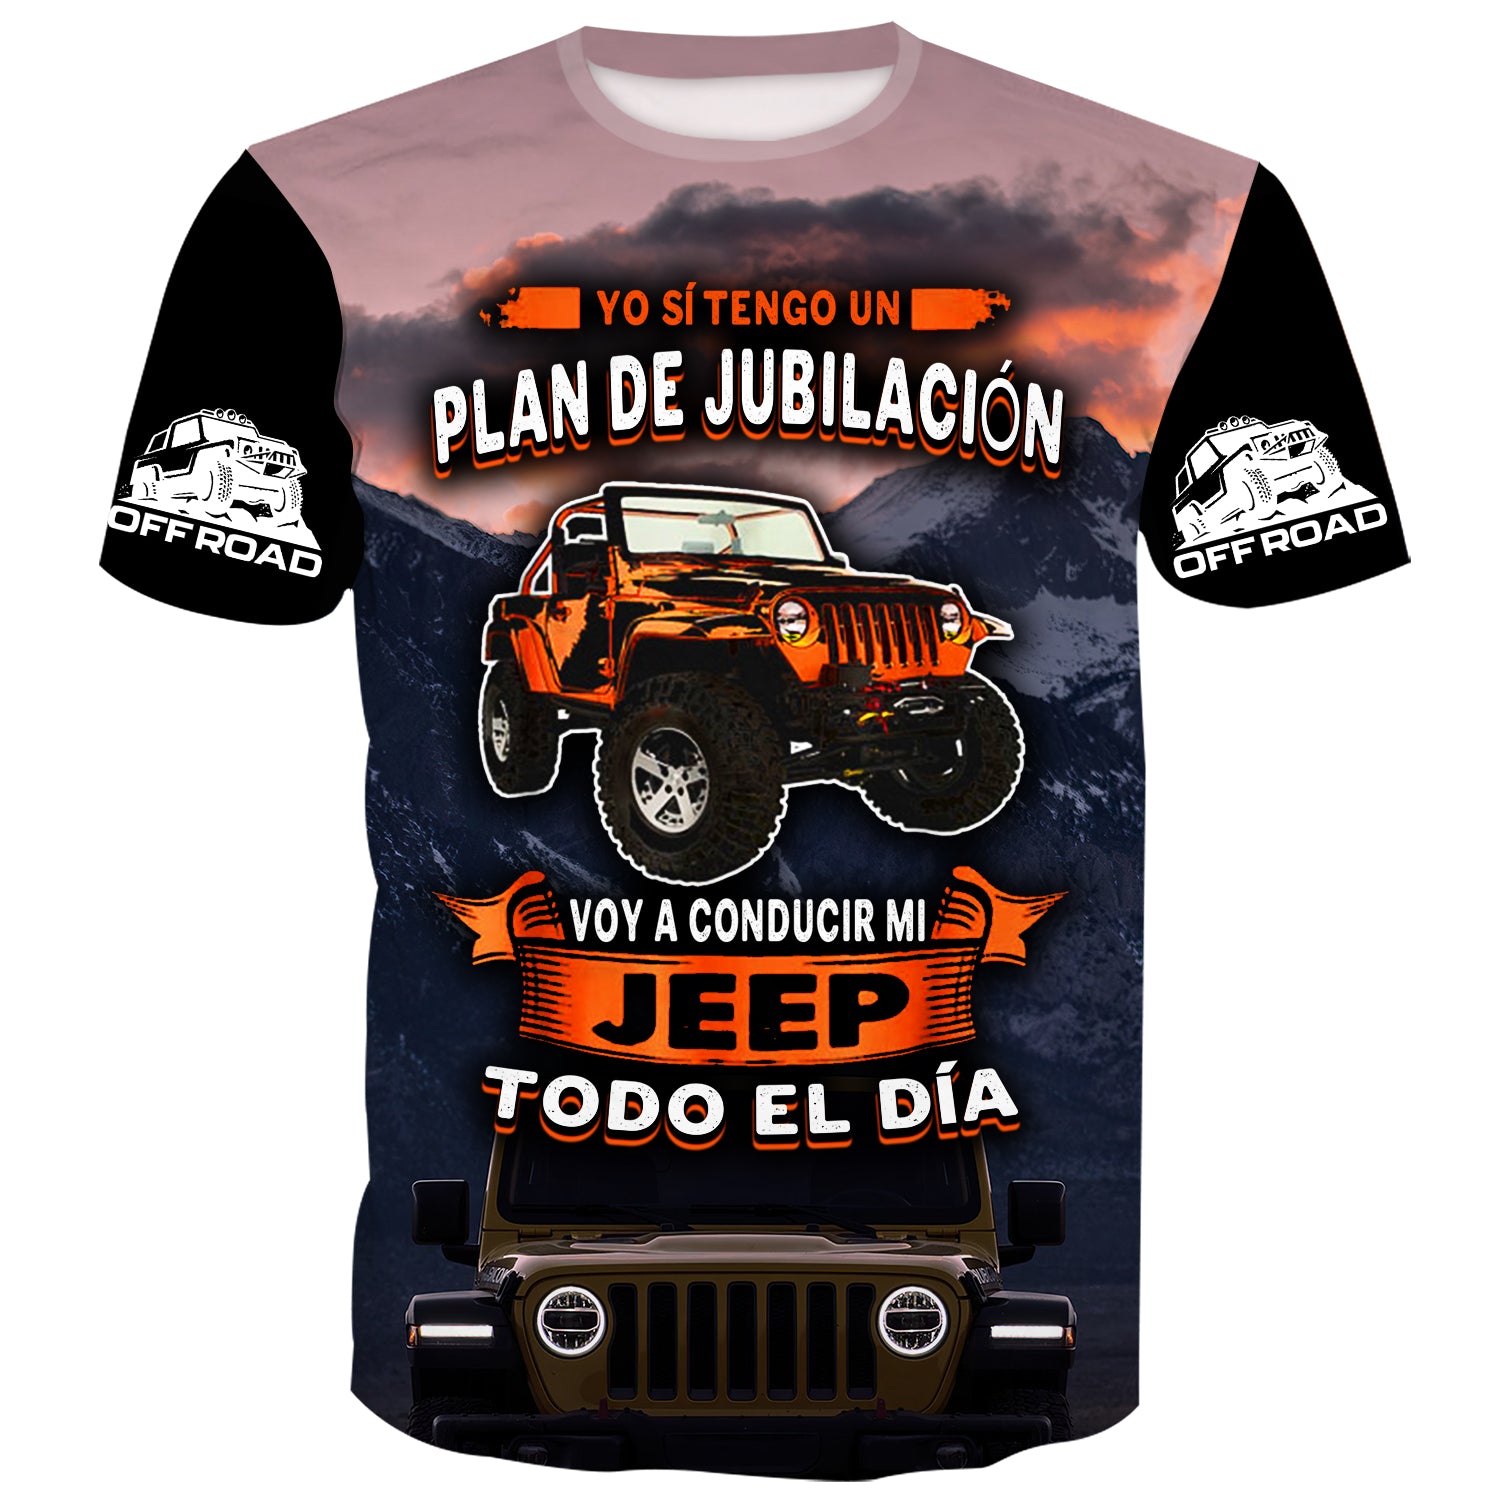 Plan de Jubilación, Conduce Jeep Todo el Día - Camiseta